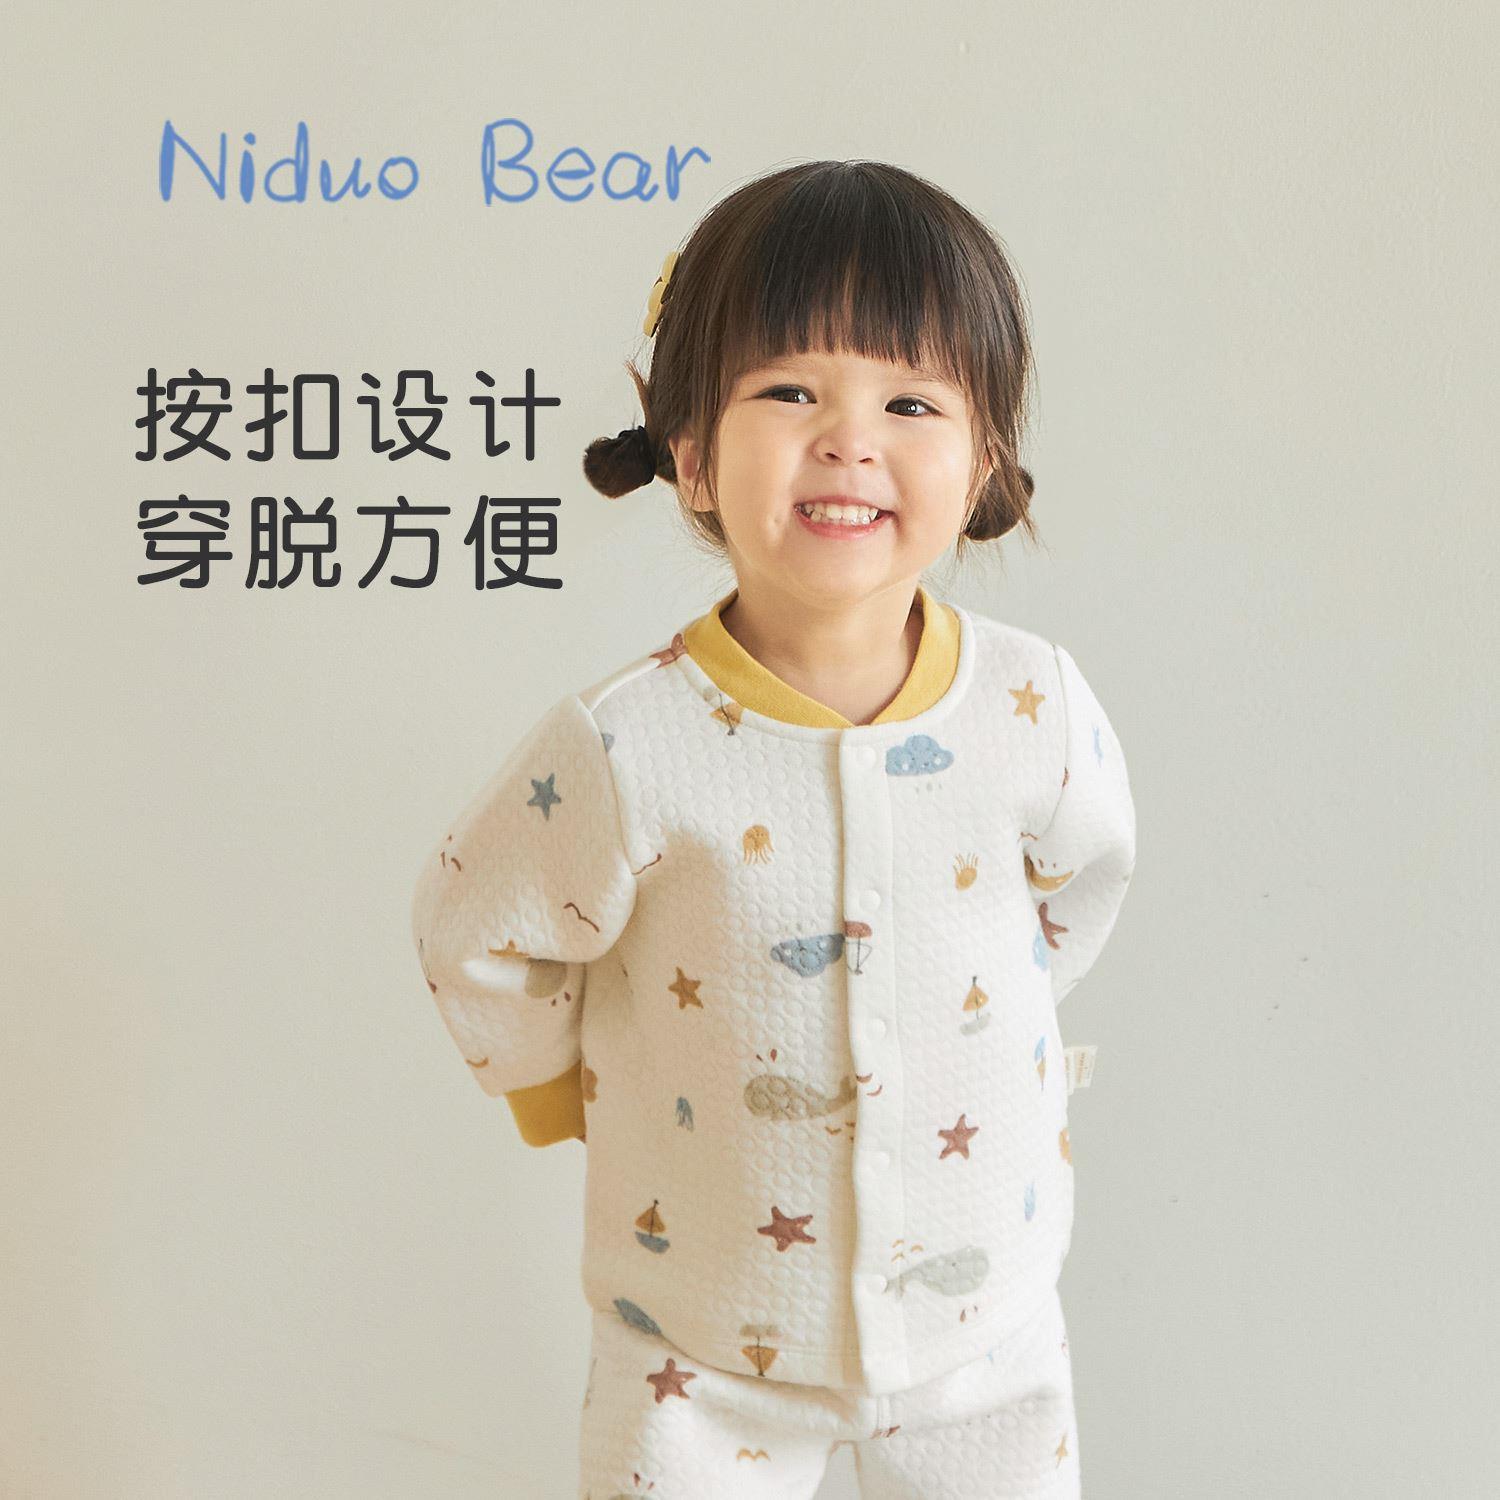 尼多熊冬季新款宝宝保暖内衣套装加厚婴儿儿童睡衣家居服纯棉夹棉